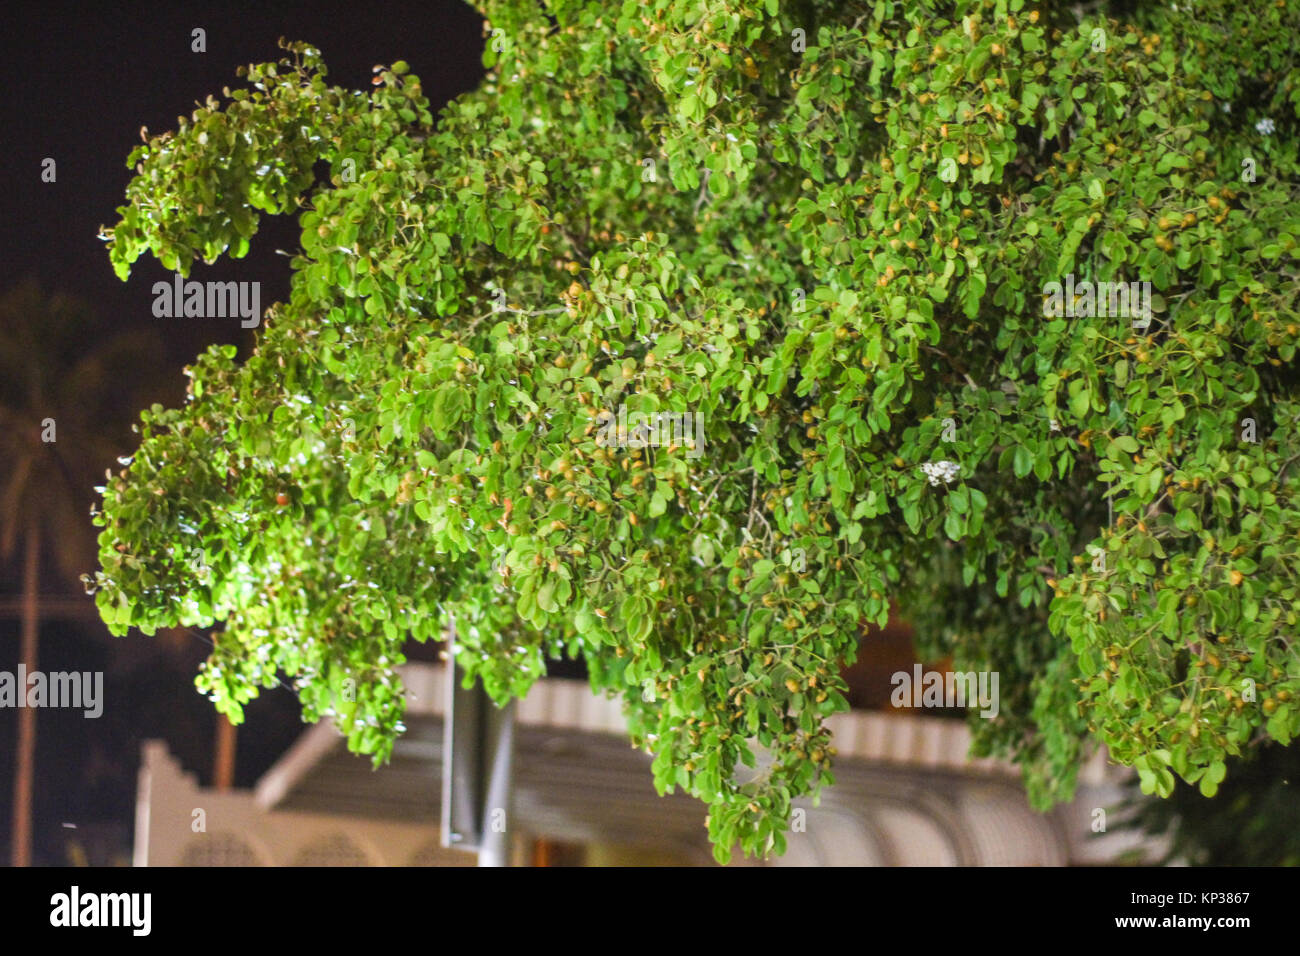 Blätter, Früchte auf dem Kleinen in Wüste und Garten Grün Gras Hintergrund Textur Wald Bäume. Natur grünes Holz Sonnenlicht Hintergründe Stockfoto